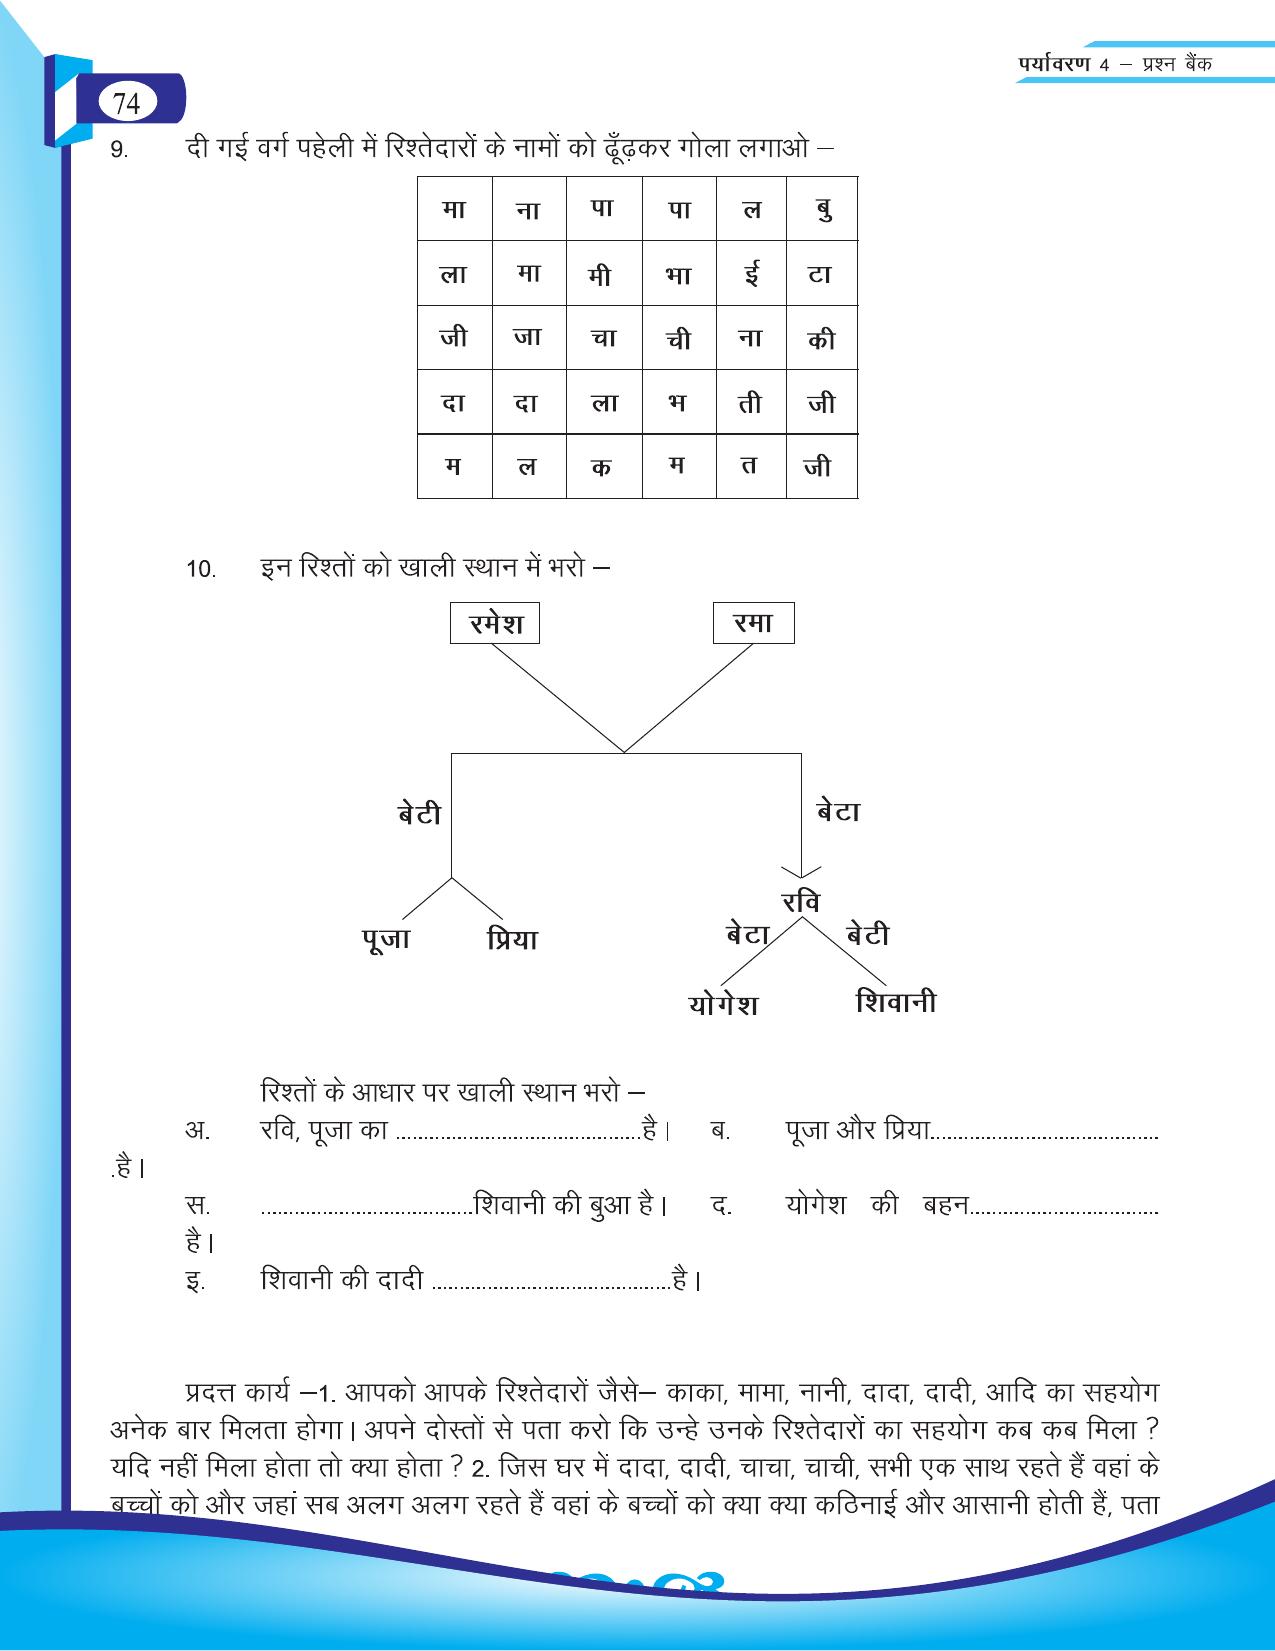 Chhattisgarh Board Class 4 EVS Question Bank 2015-16 - Page 3